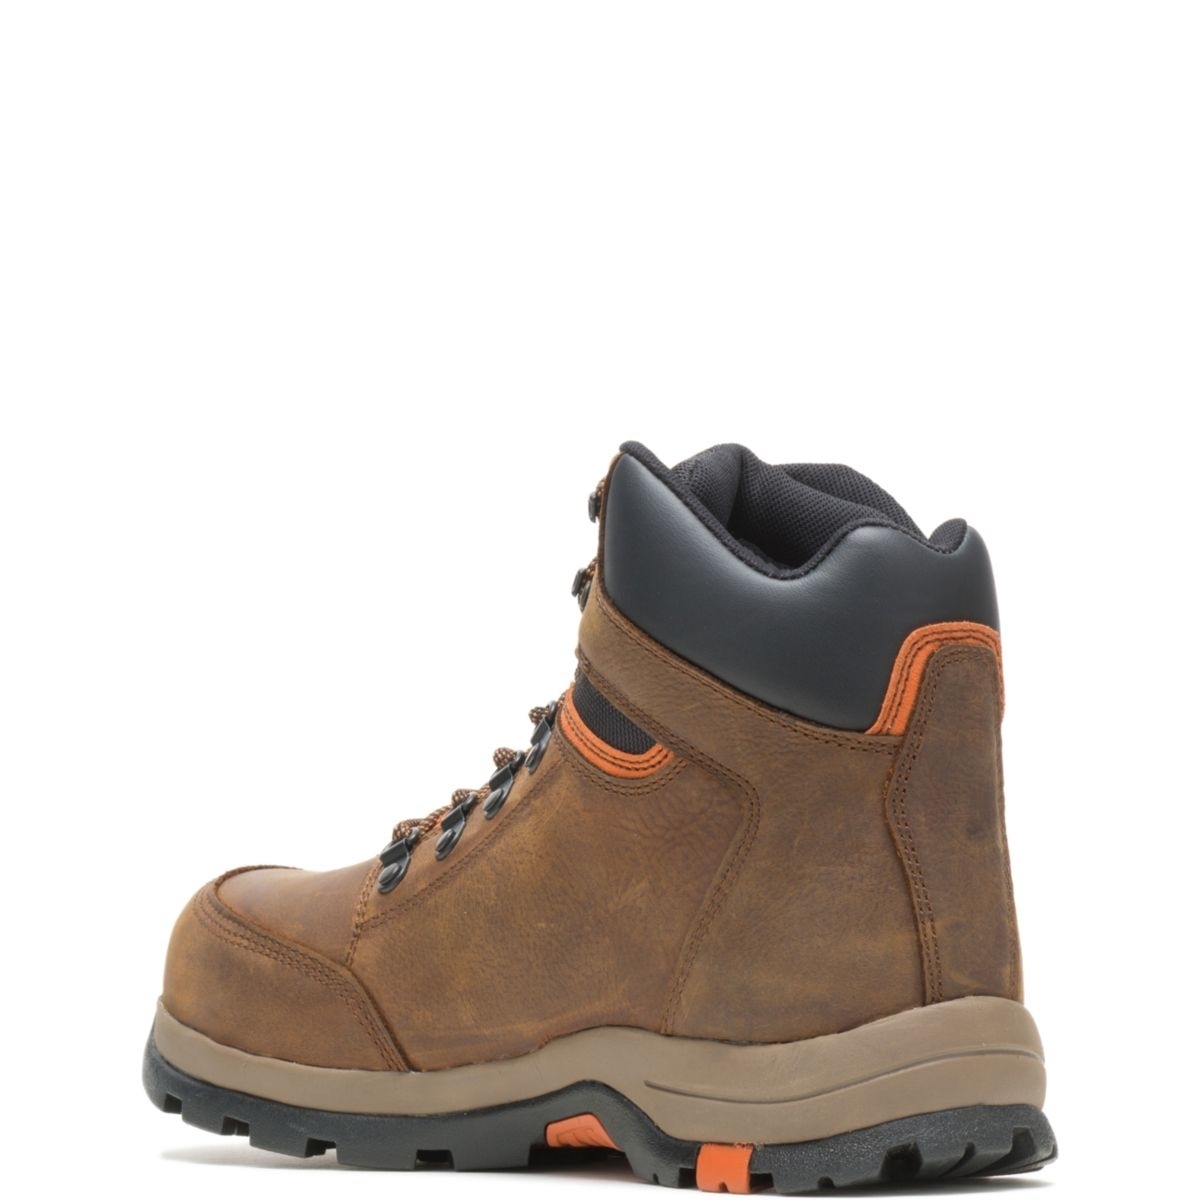 WOLVERINE Men's Grayson Steel Toe Waterproof Work Boot Brown - W211043 BROWN - BROWN, 8